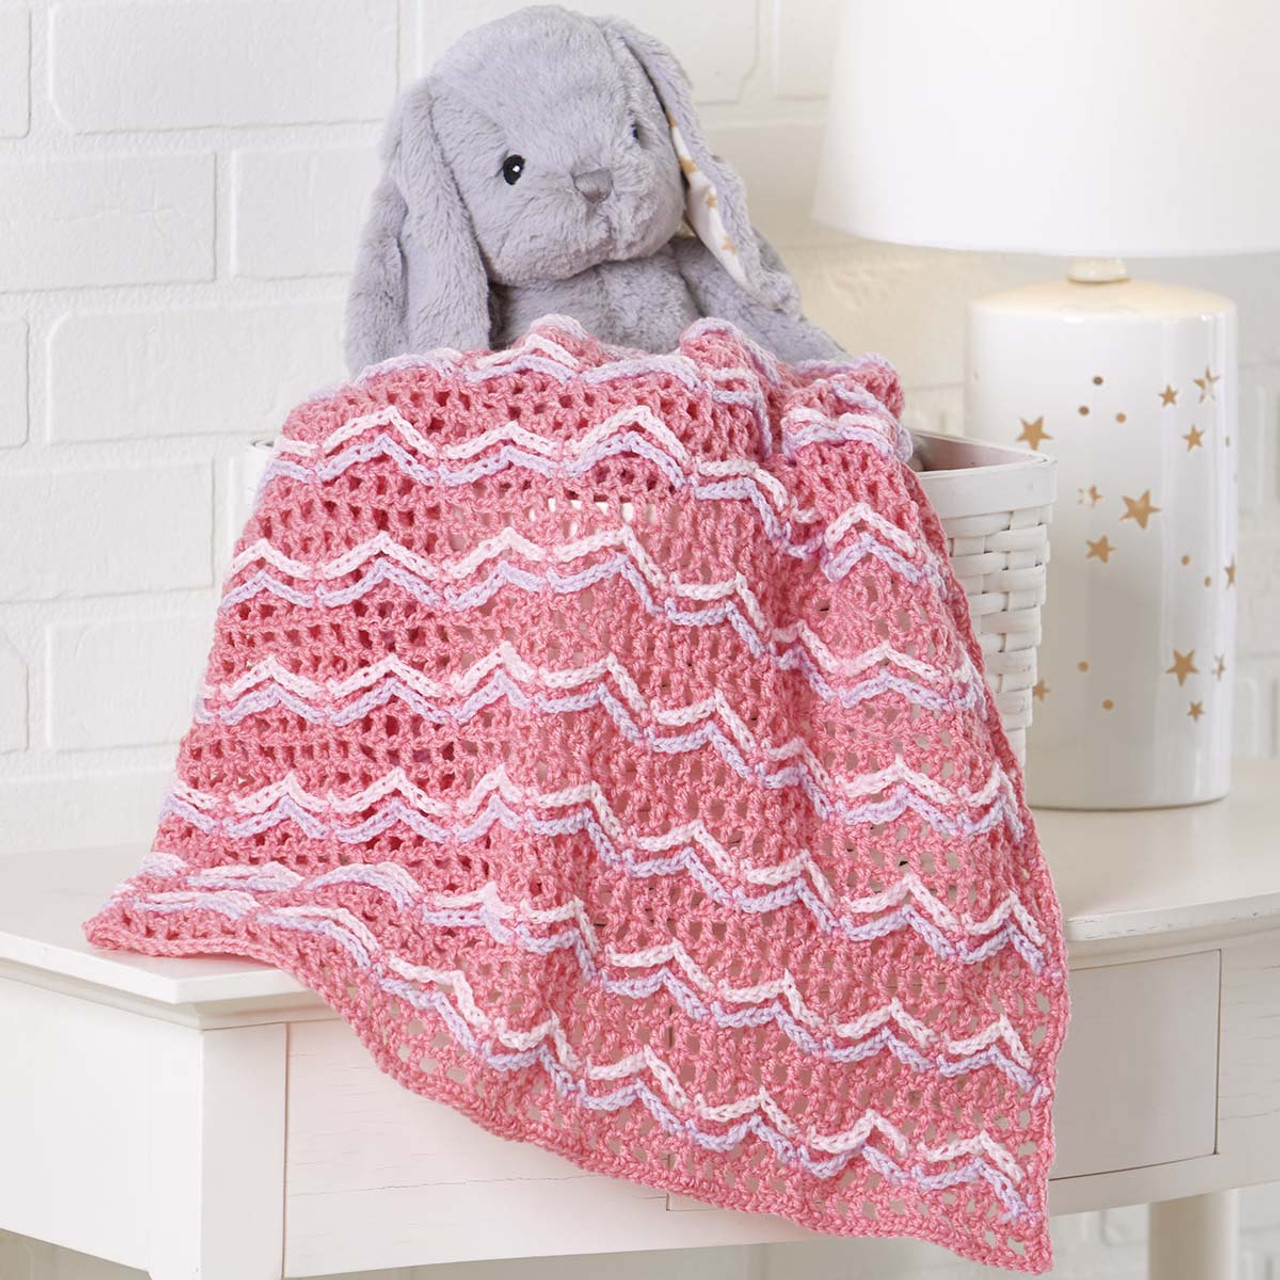 Herrschners Enchanted Ripples Baby Blanket Crochet Kit